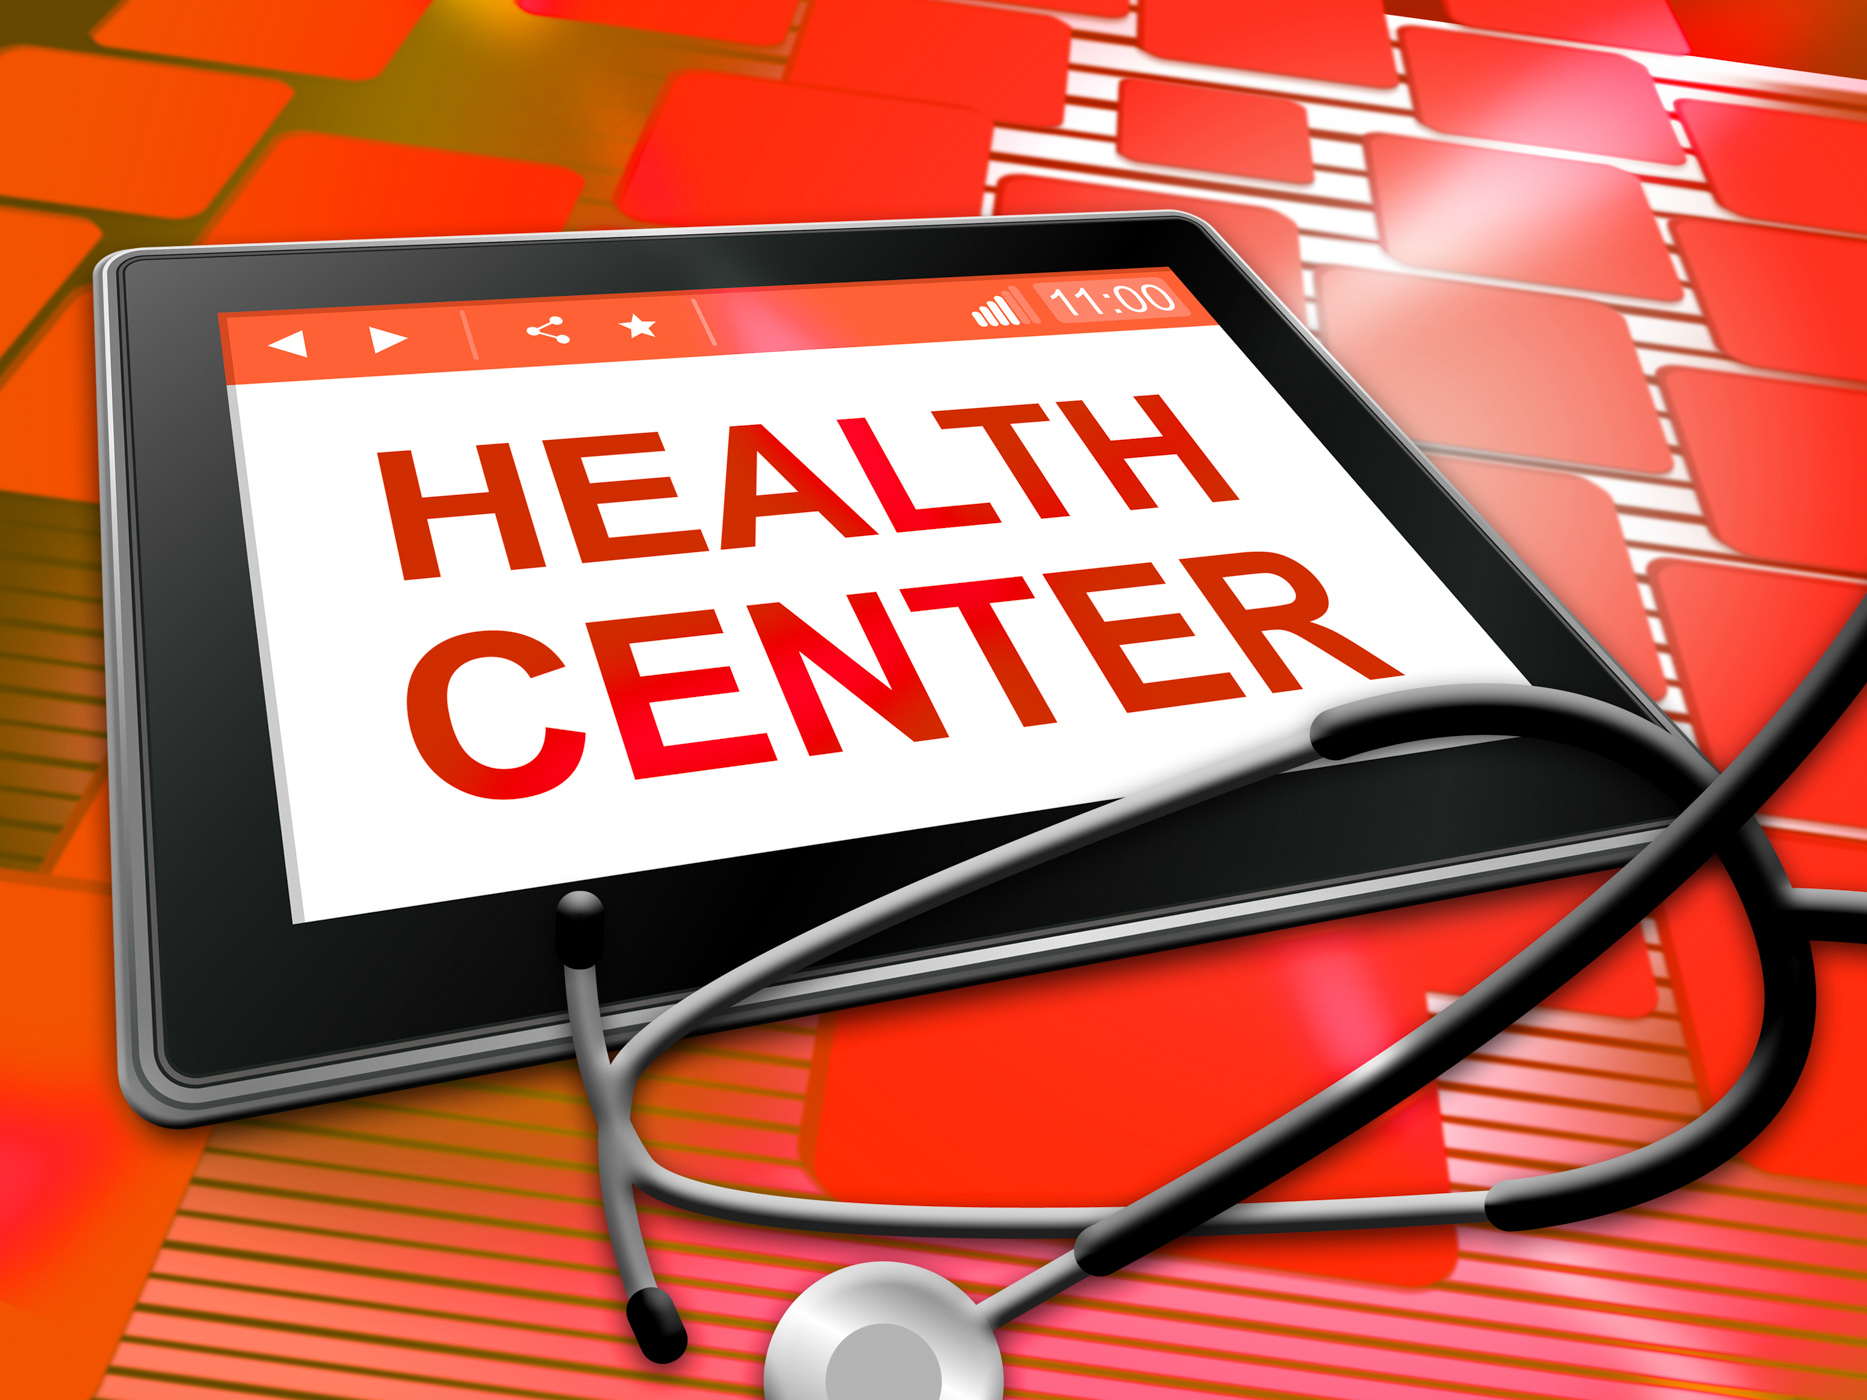 Health center represents preventive medicine and shop photo